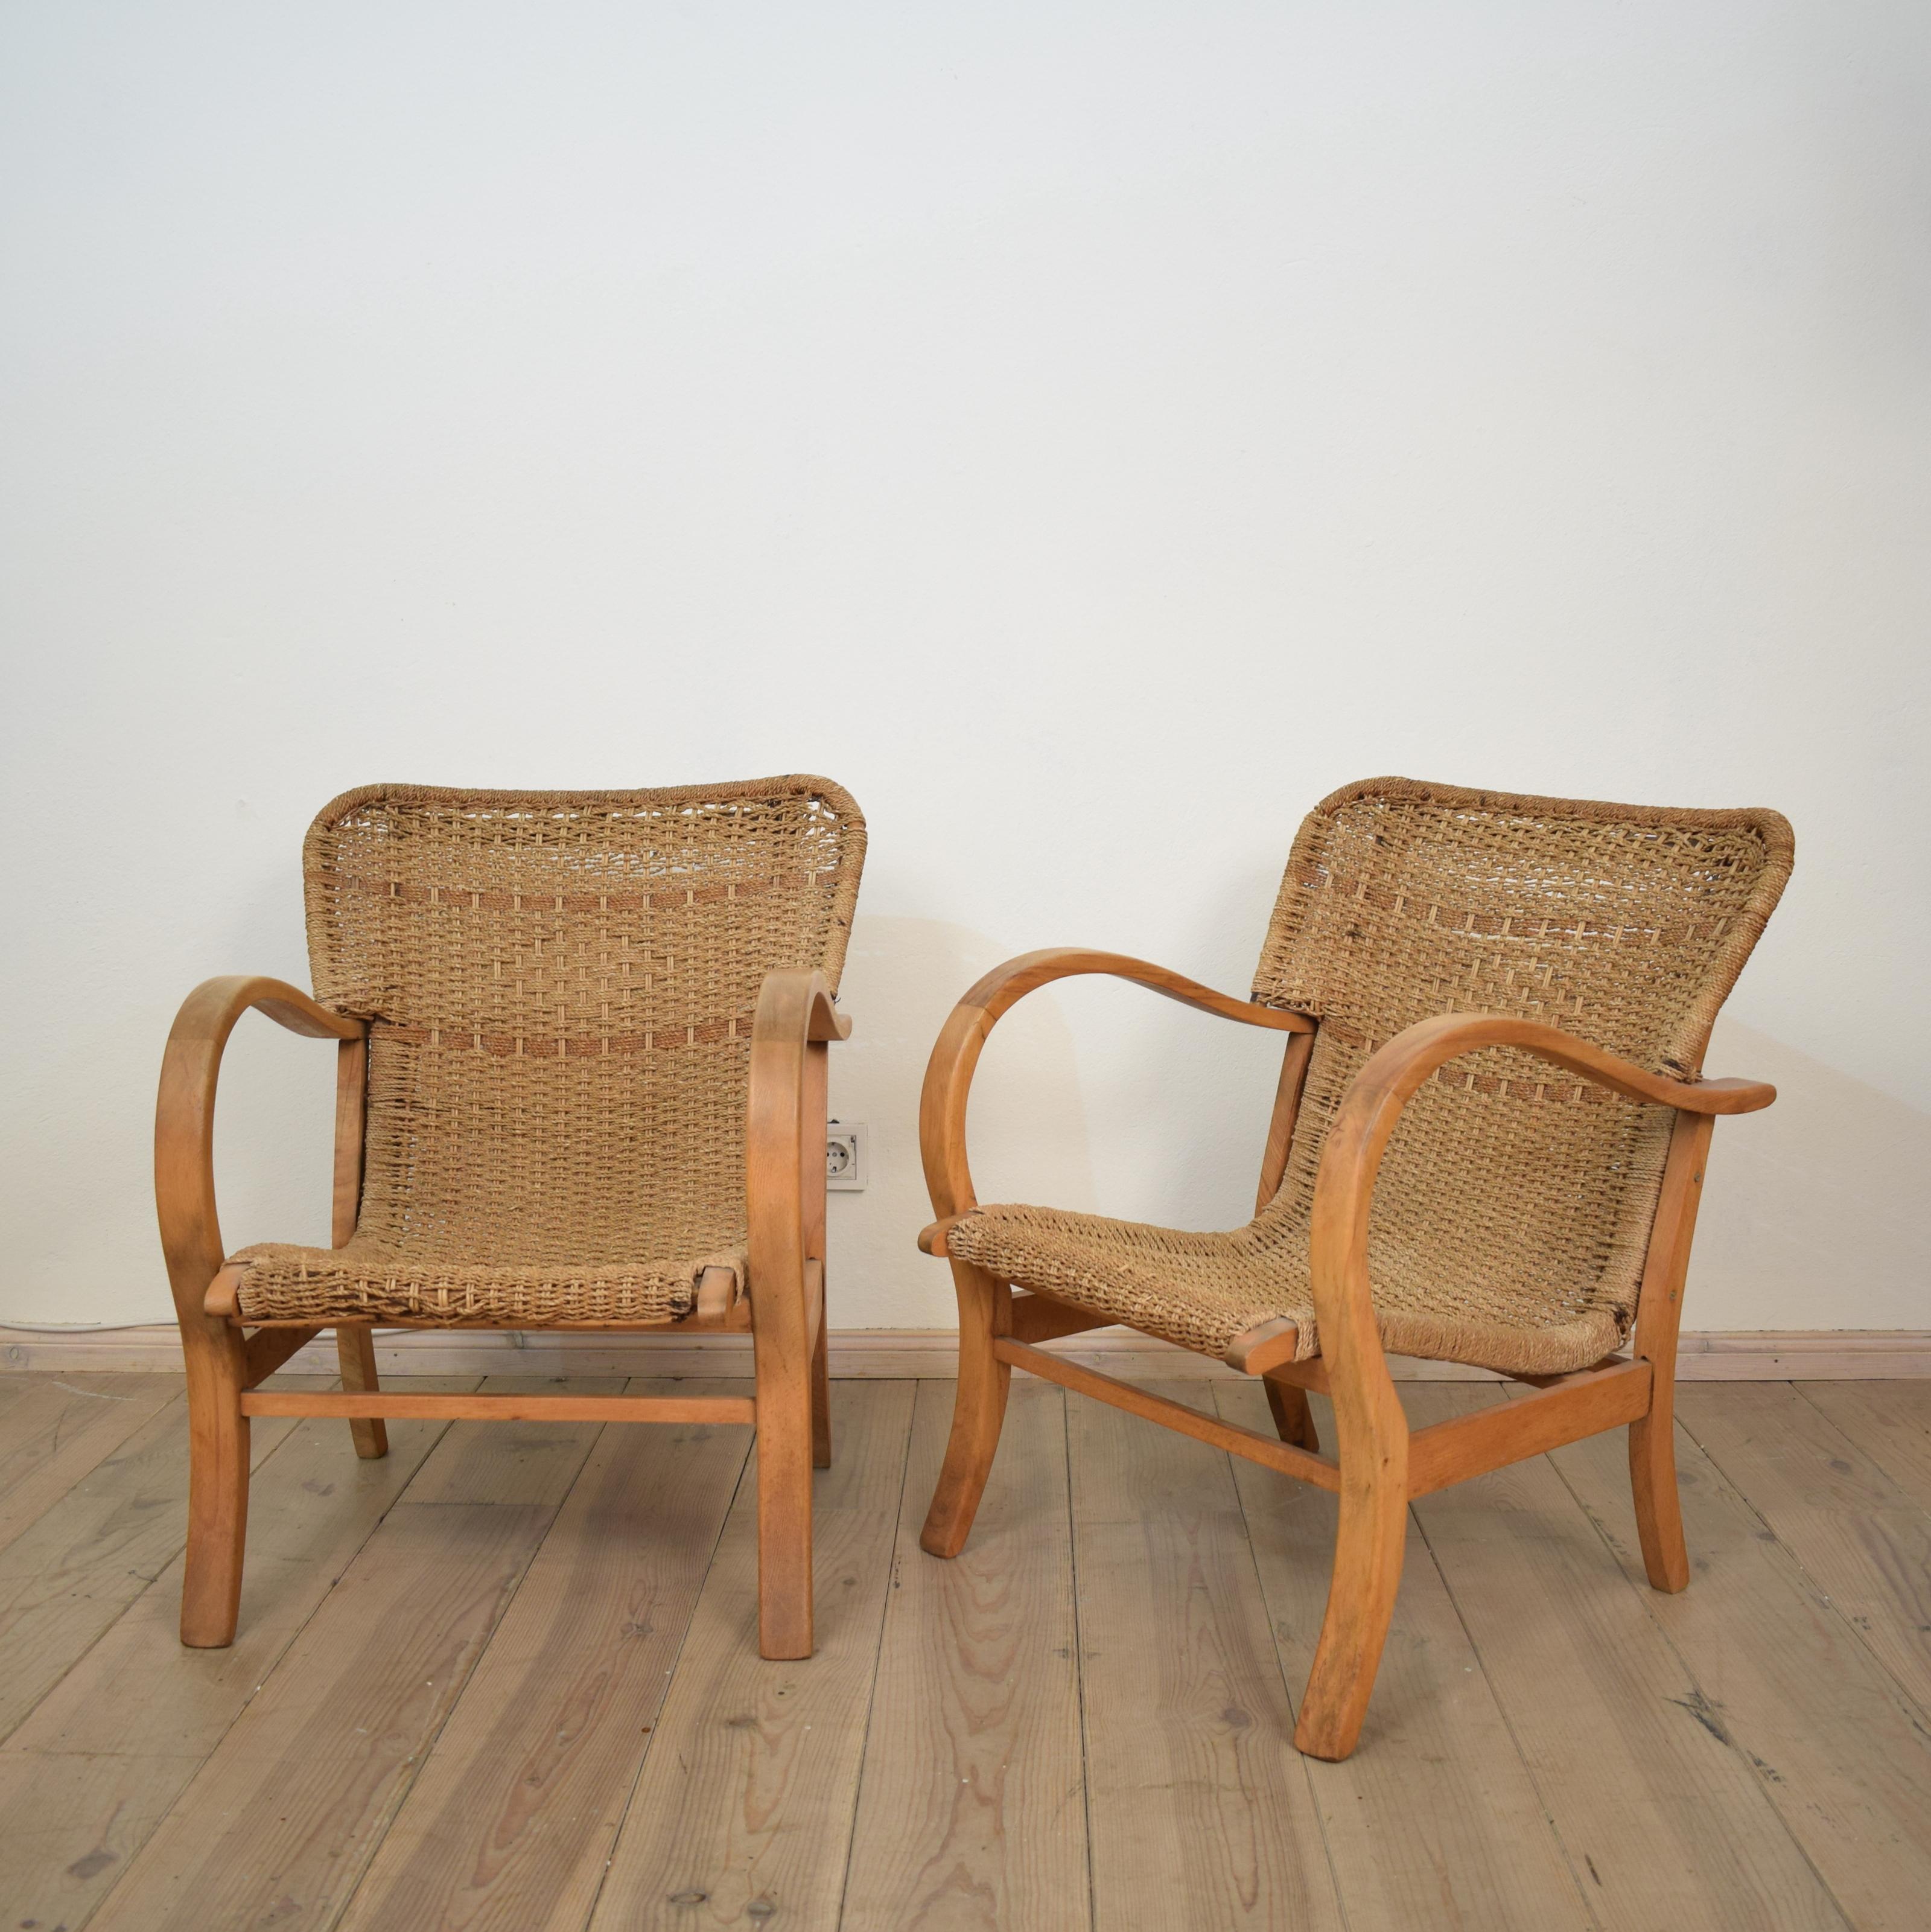 Ein Paar Bauhaus-Sessel aus Buche und geflochtenem Seil/Schilfrohr von Erich Dieckmann, 1920 (Deutsch)